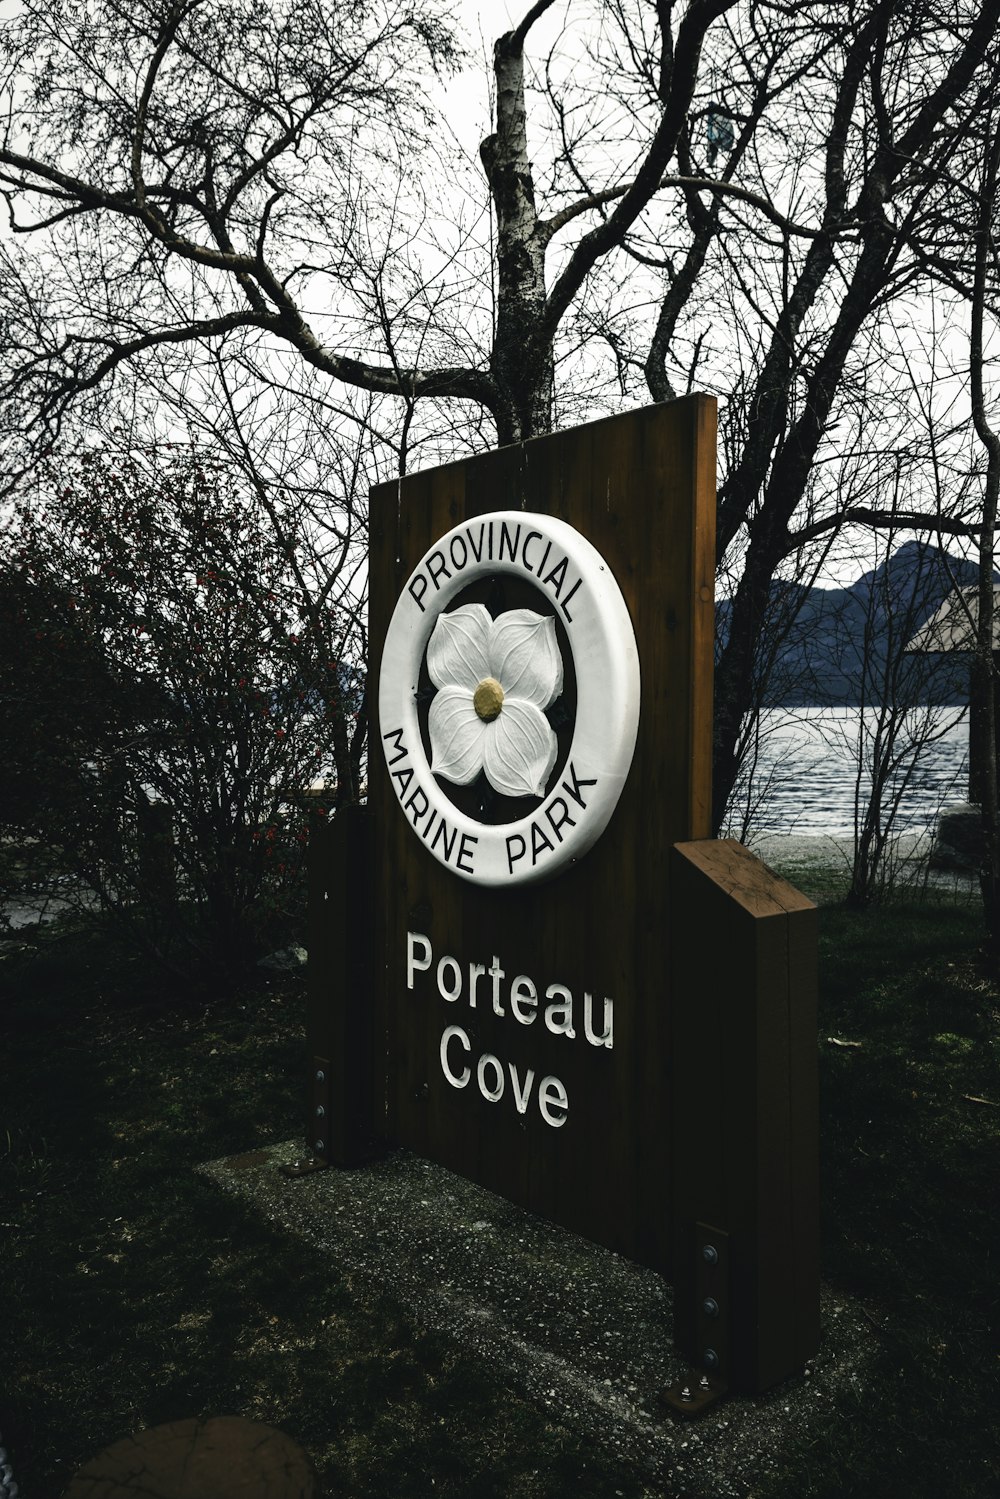 Ein Schild für Portreau Cove vor einem Baum